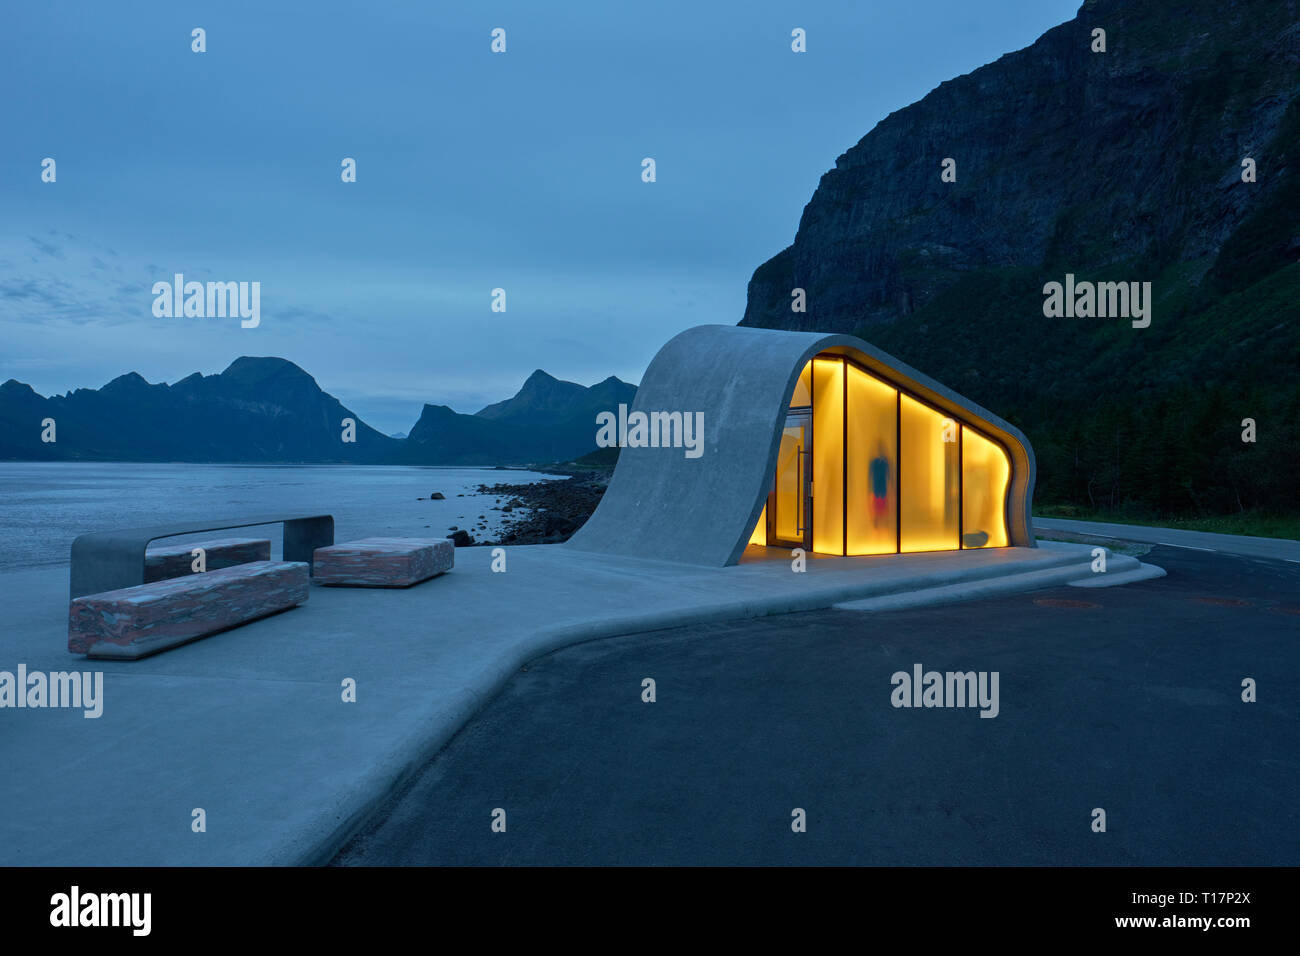 La vague de béton et de verre en forme d'architecture moderne d'Ureddplassen Helgelandskysten aire de repos sur la route panoramique de Nordland Norvège Norvégien Banque D'Images